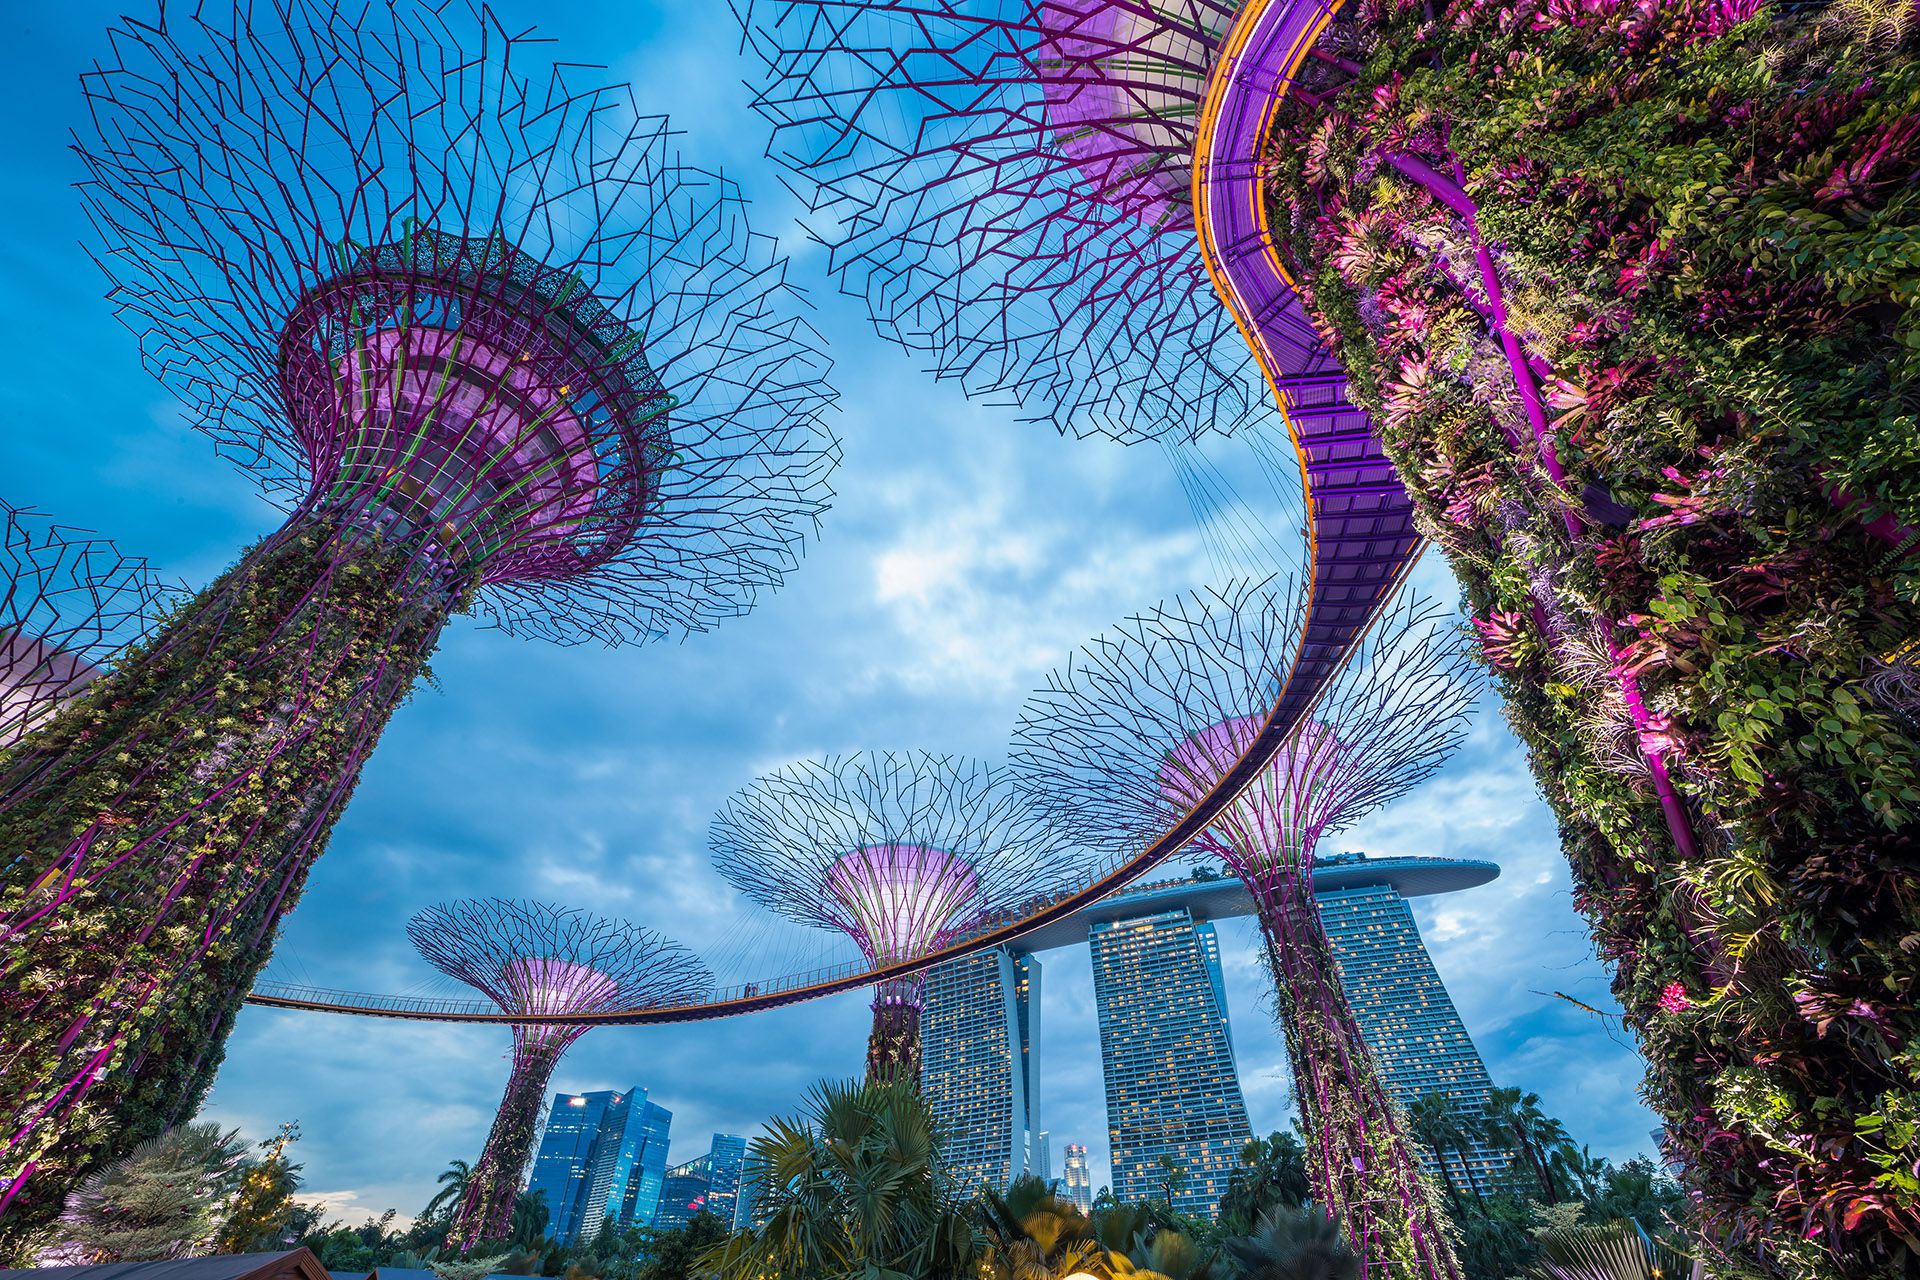 Probablemente Singapur sea el país más seguro de Asia. Además, es inmune a los desastres naturales: no hay nada en sus inmediaciones que pueda representar una amenaza